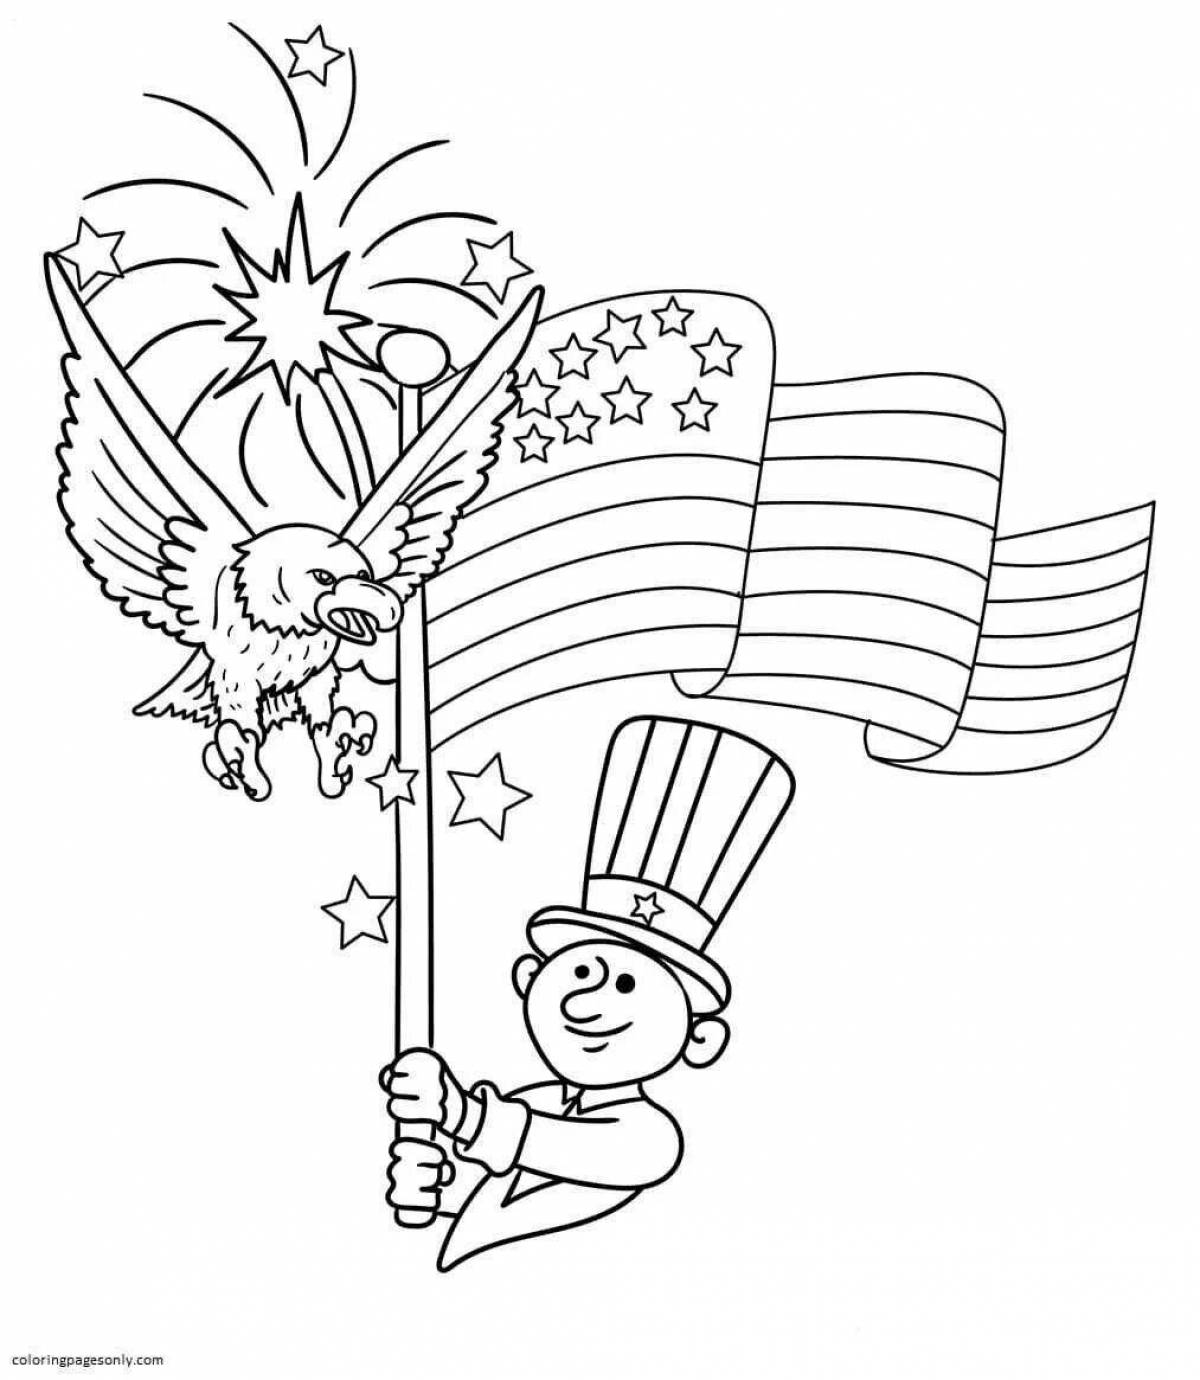 Креативная патриотическая тематическая раскраска для дошкольников